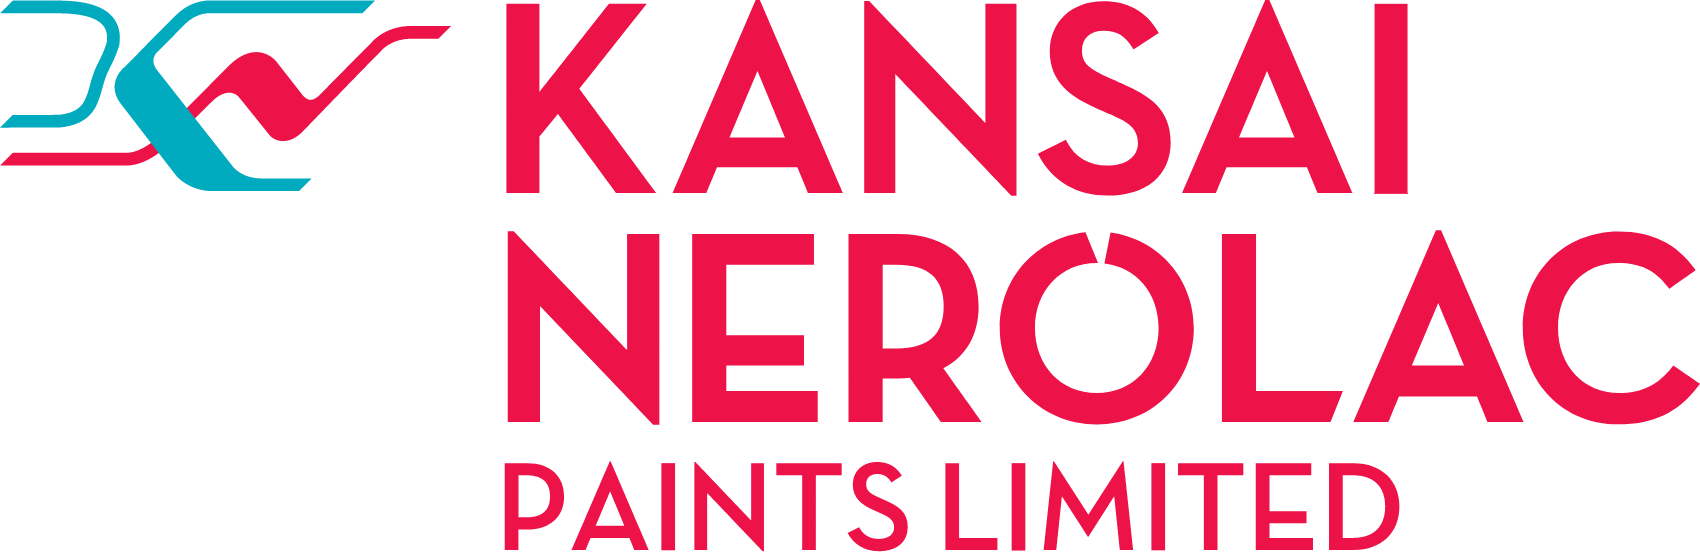 Nerolac Paints logo large (transparent PNG)